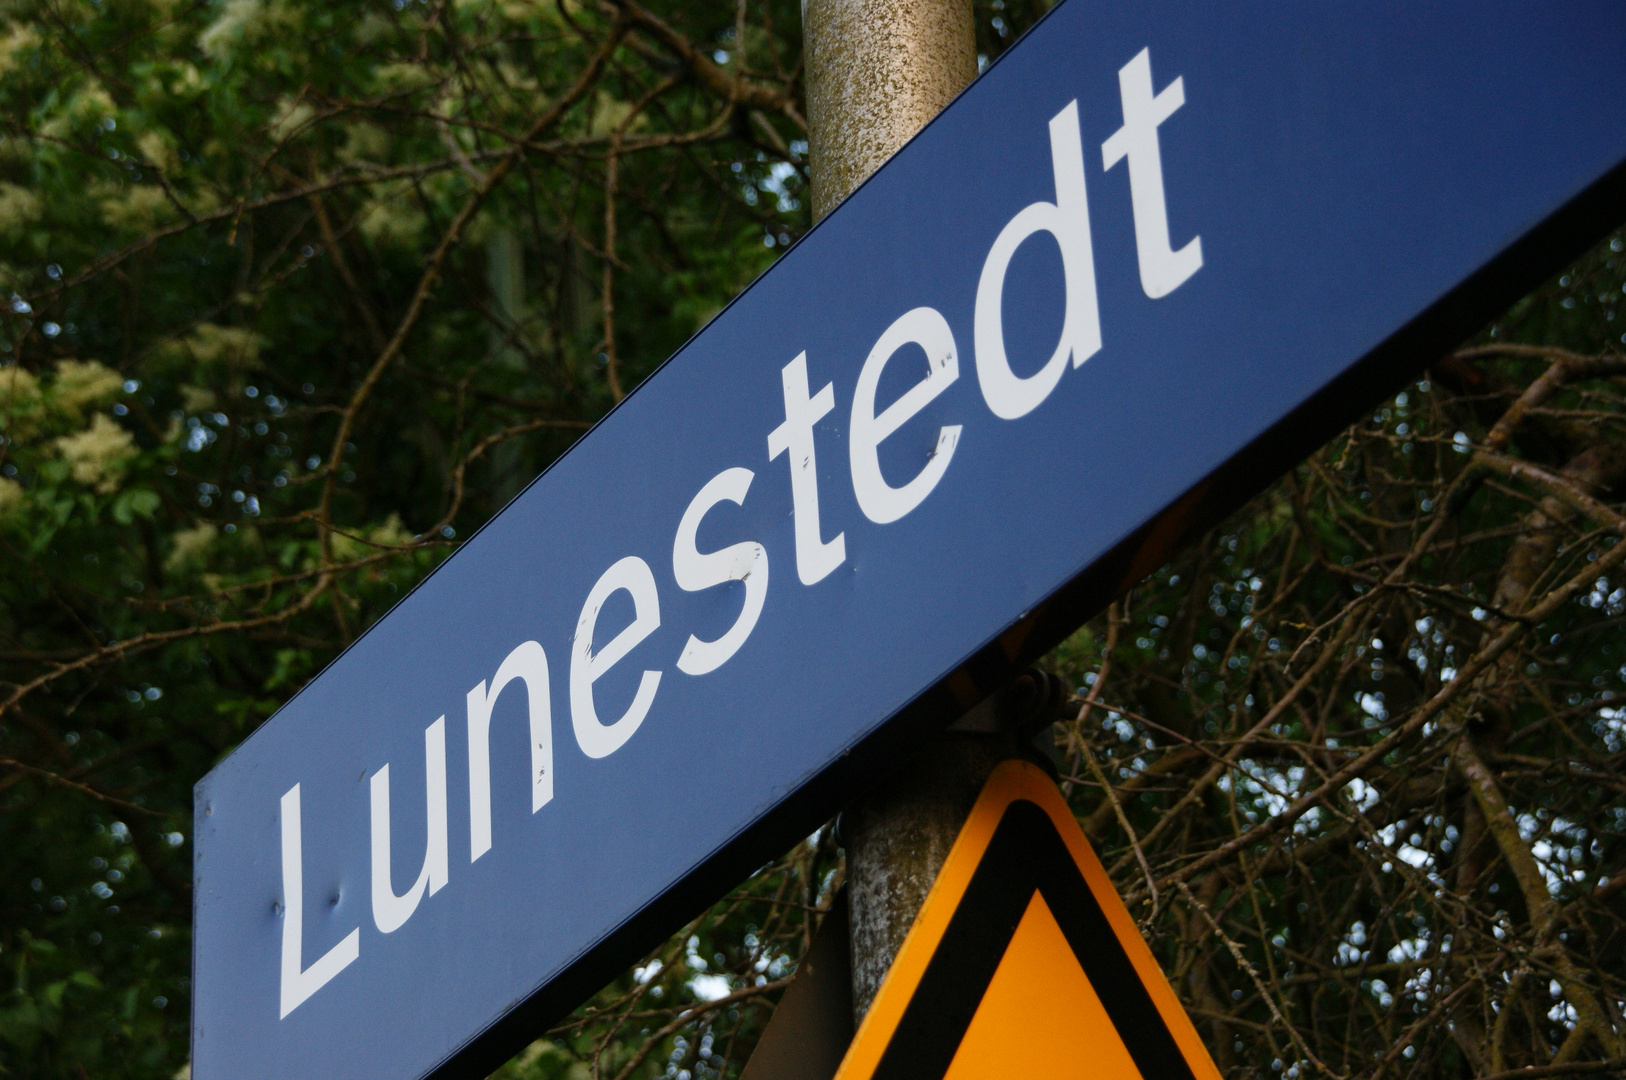 Bahnhof Lunestedt